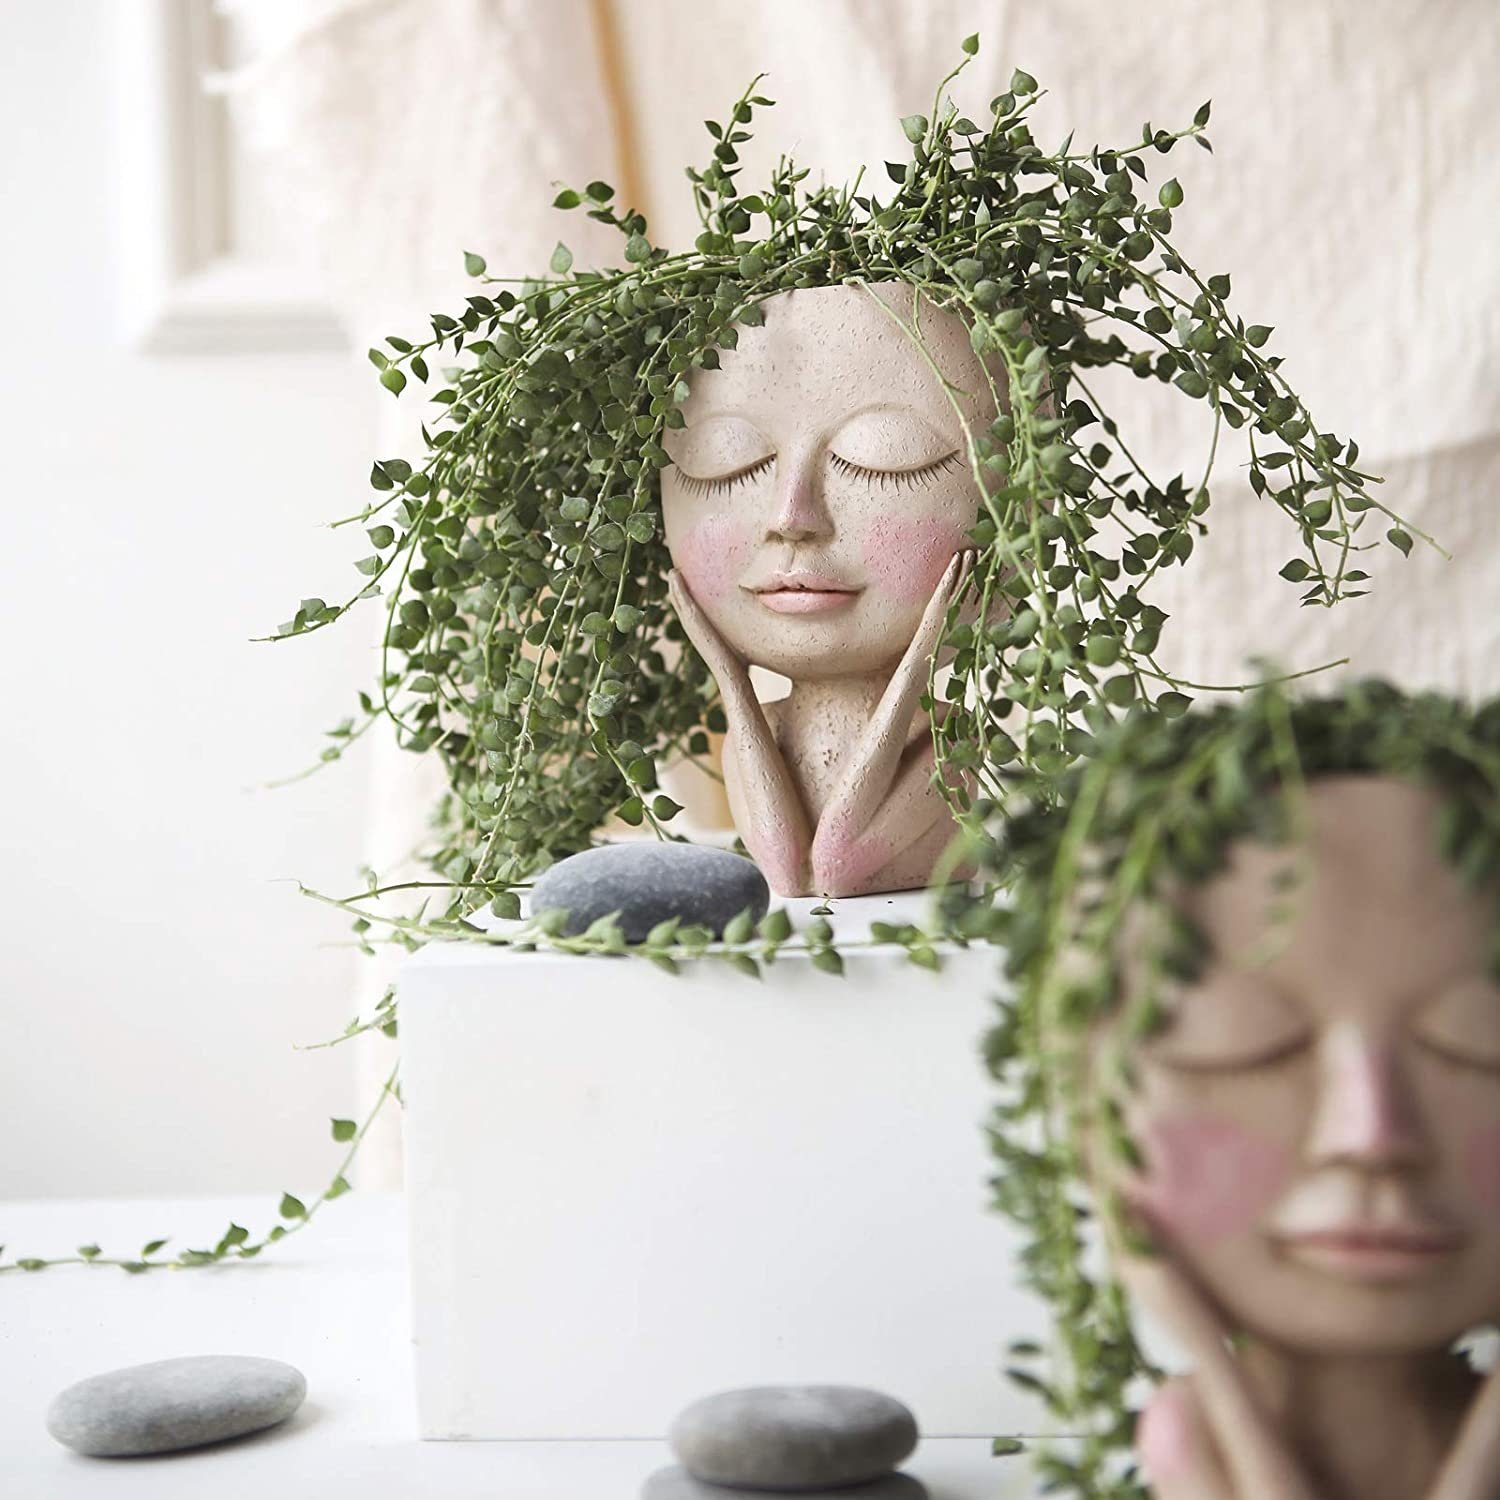 mit Kopf mit Design,Blumentöpfe Hole, Blumentöpfe XDeer Gesicht,Menschlicher menschlicher Gesicht Blumentopf Drainage Design Gesicht,kreative Menschlicher Vase Kopf